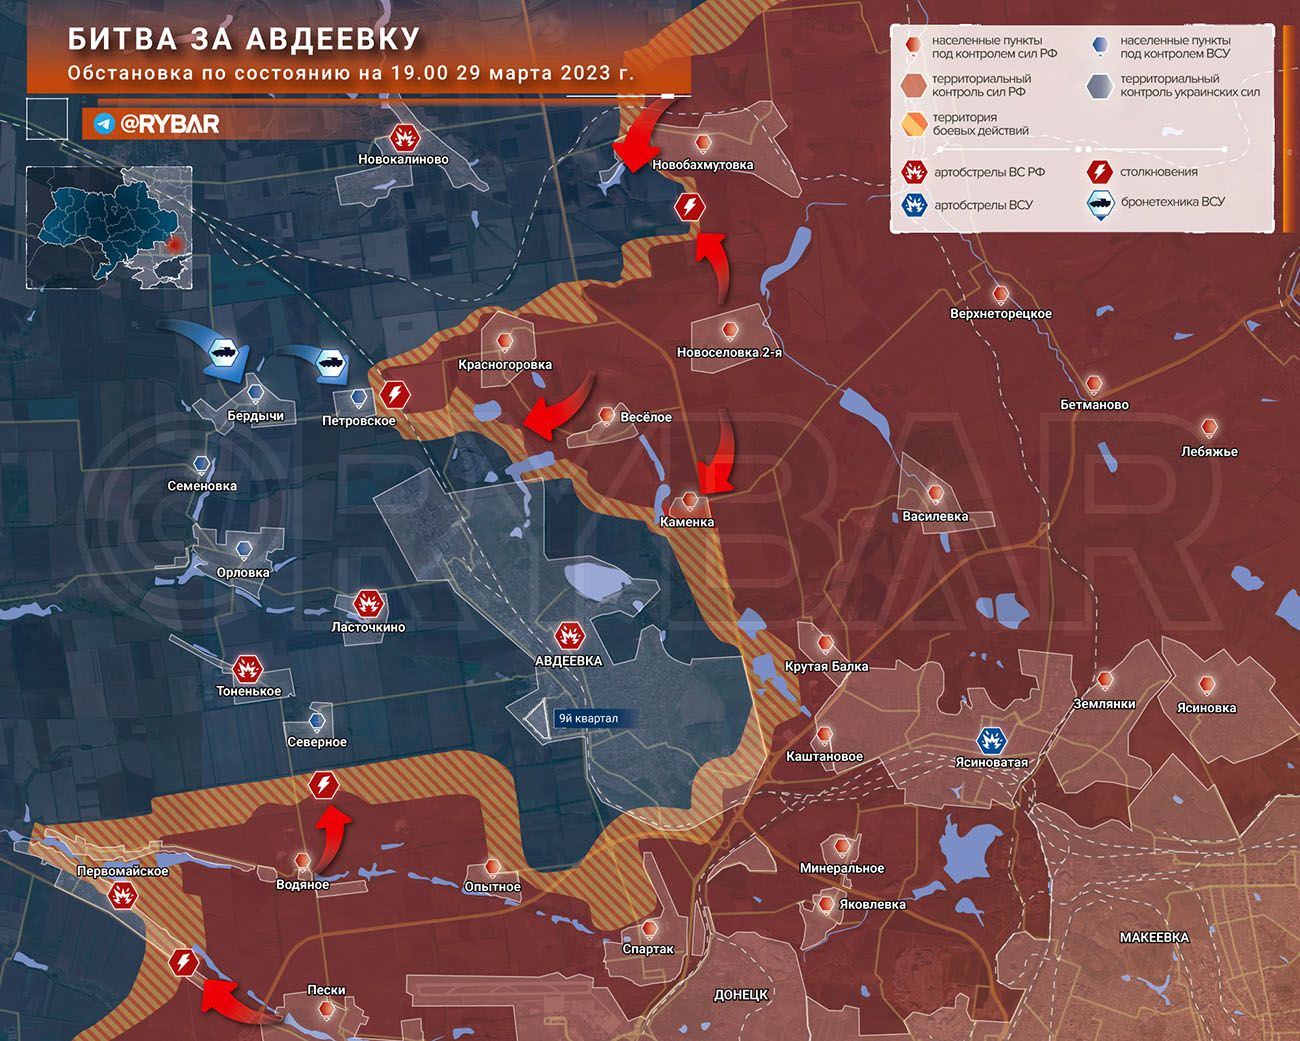 Битва за Авдеевку 29.03.2023 — обстановка и карта боёв сегодня